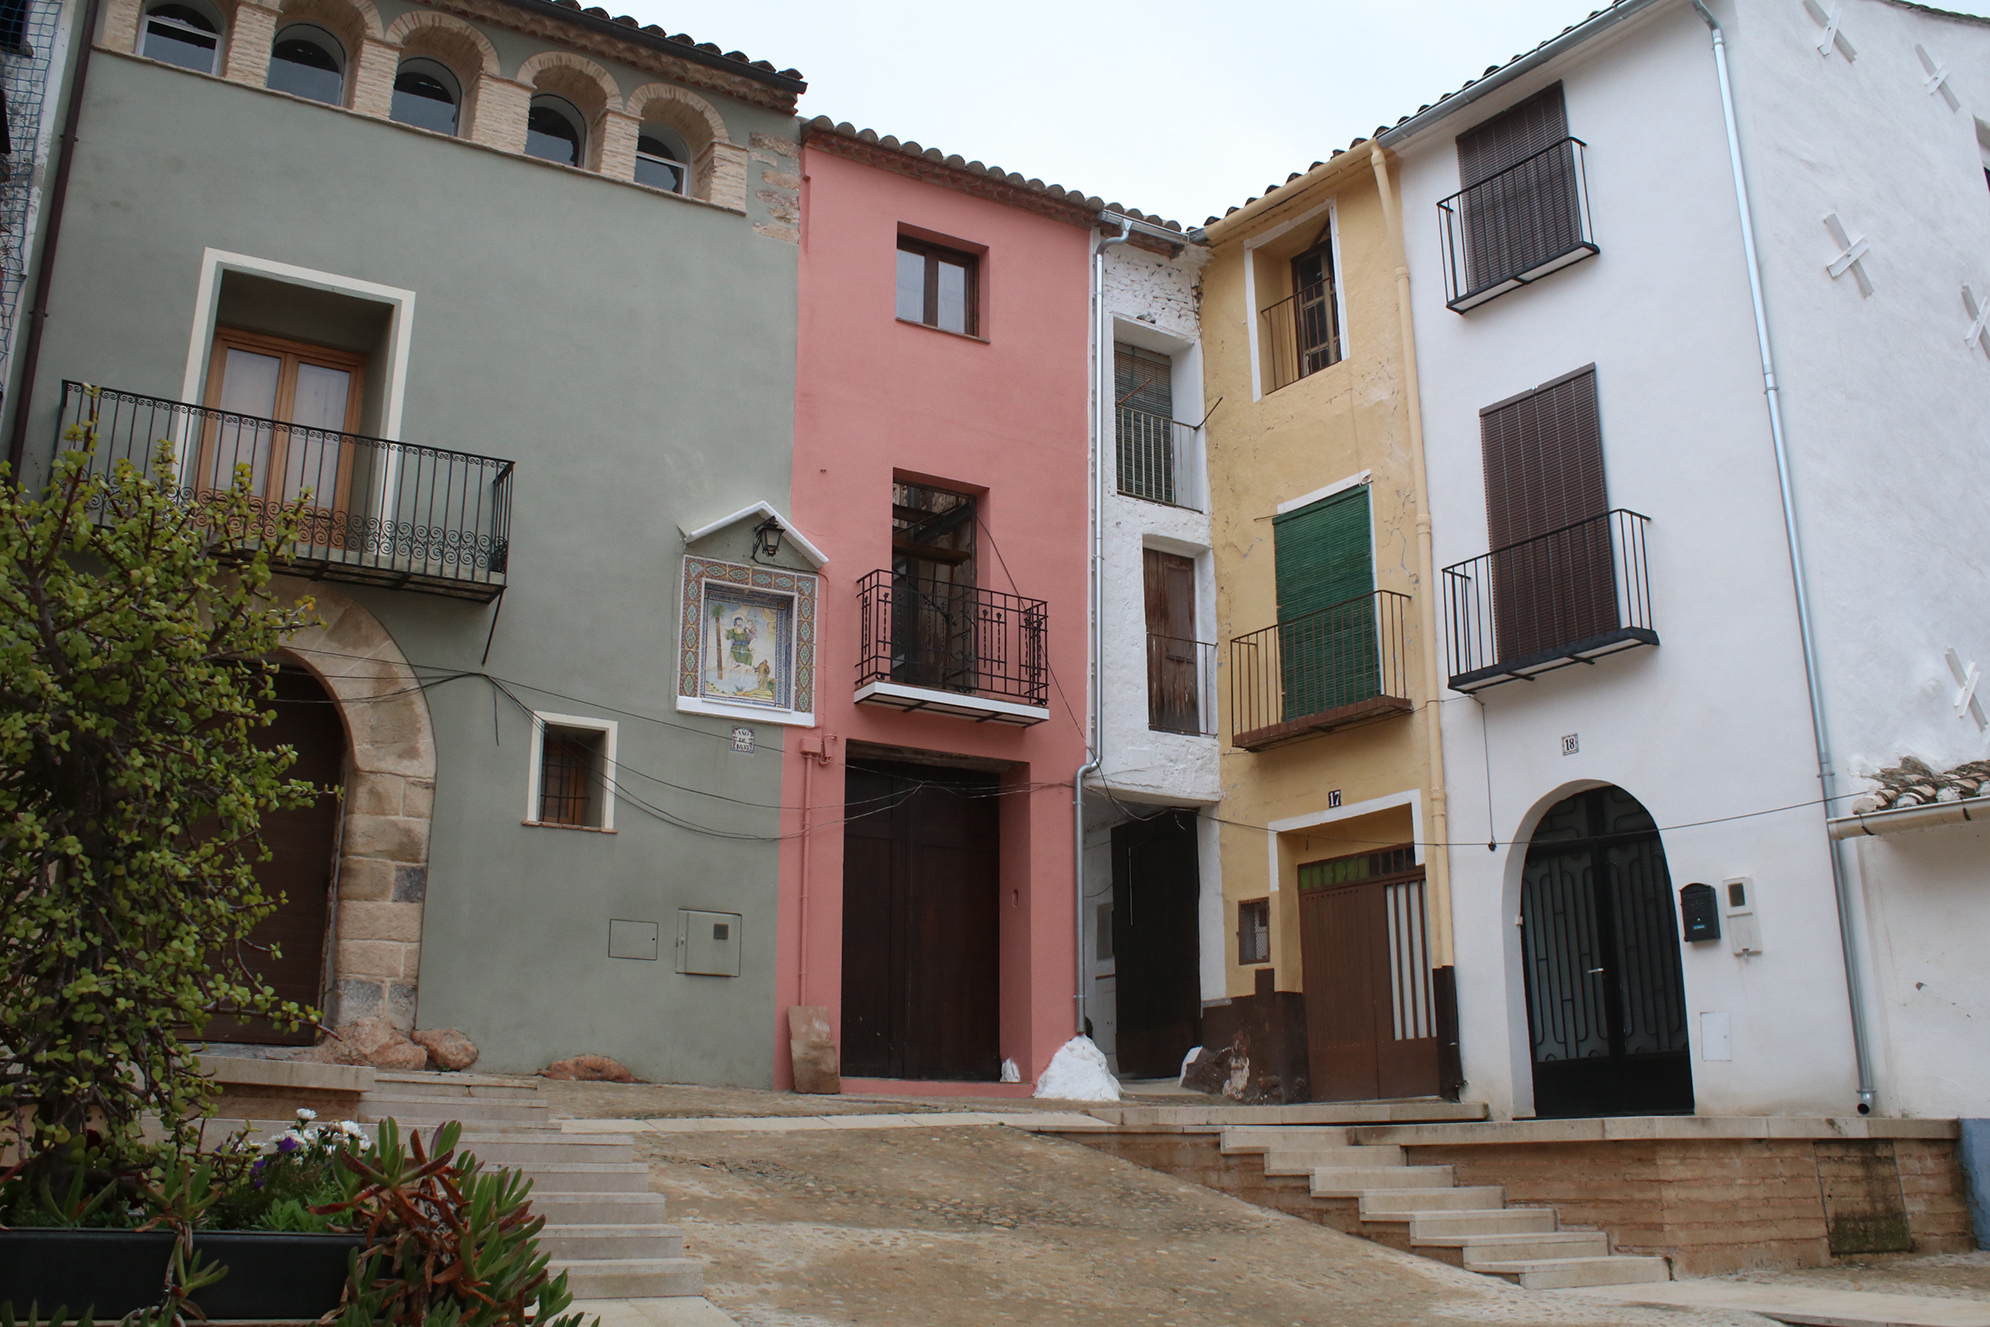 Onda embellece la plaza San Cristóbal con la reconstrucción de la fachada de una casa histórica